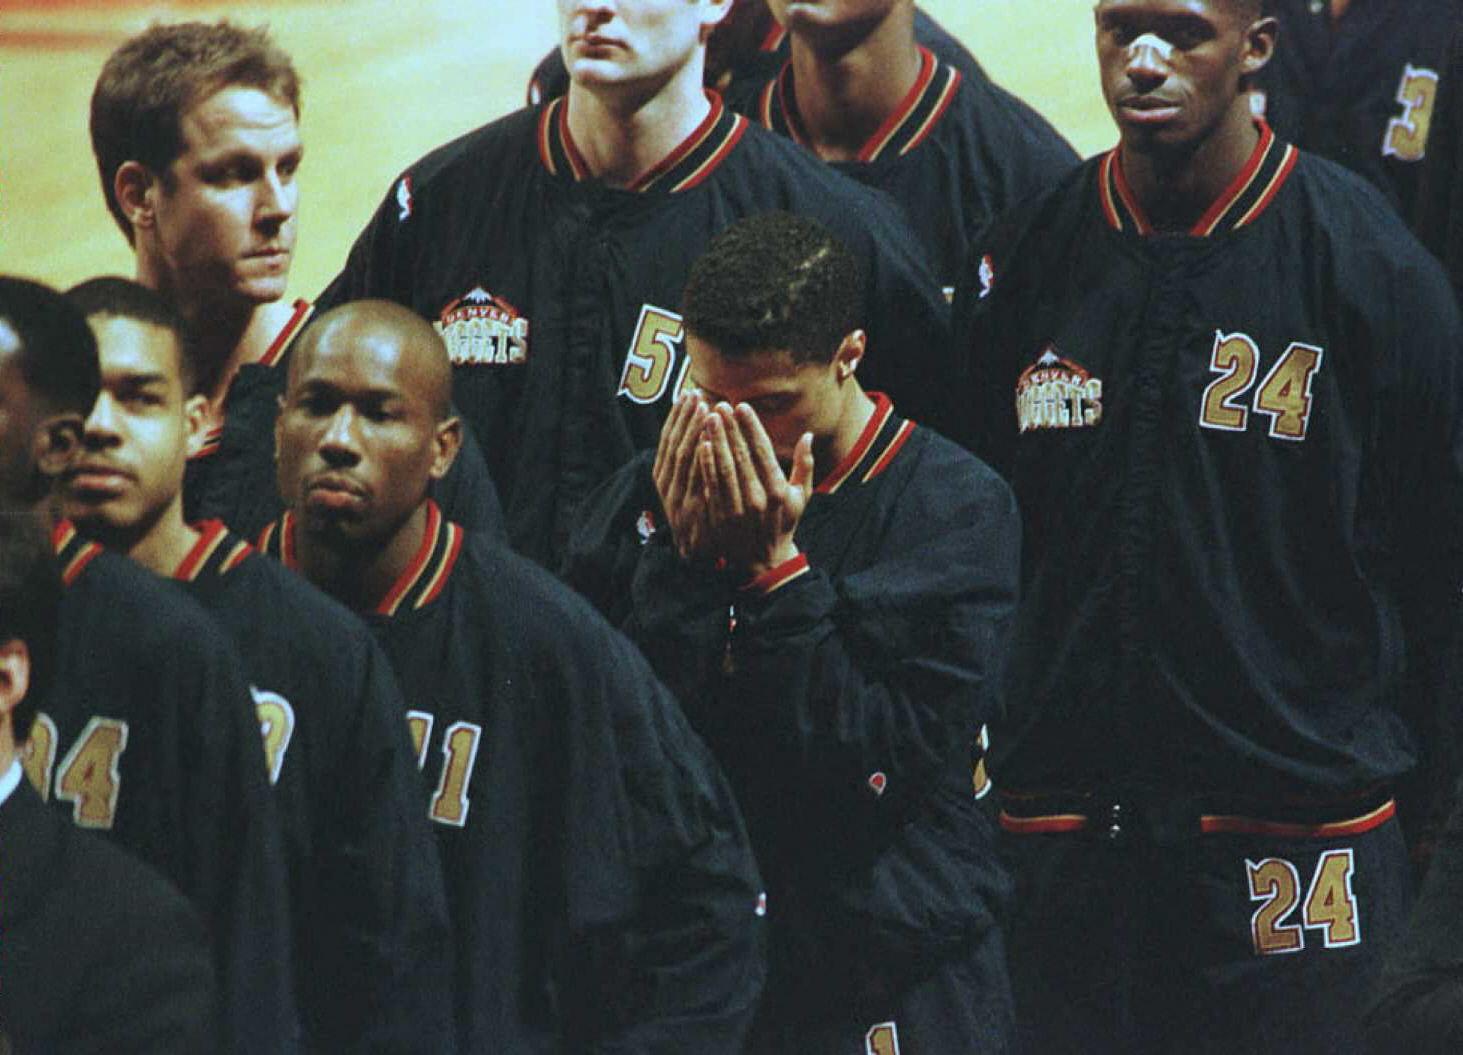 Le défenseur des Denver Nuggets Mahmoud Abdul-Rauf (C) incline la tête pour prier, le 15 mars 1996 à Chicago, dans l'Illinois, pendant l'hymne national américain, avant un match contre les Chicago Bulls. Trois jours plus tôt, Abdul-Rauf avait été suspendu pour un match après avoir refusé de se lever pour l'hymne national, le 12 mars 1996. La photo du basketteur en pleine prière est devenu le symbole de son combat contre l'islamophobie aux USA. Il jugeait en outre que le drapeau américain était un « symbole d'oppression », d'où son refus d'entonner l'hymne. [AFP - ERIC CHU]